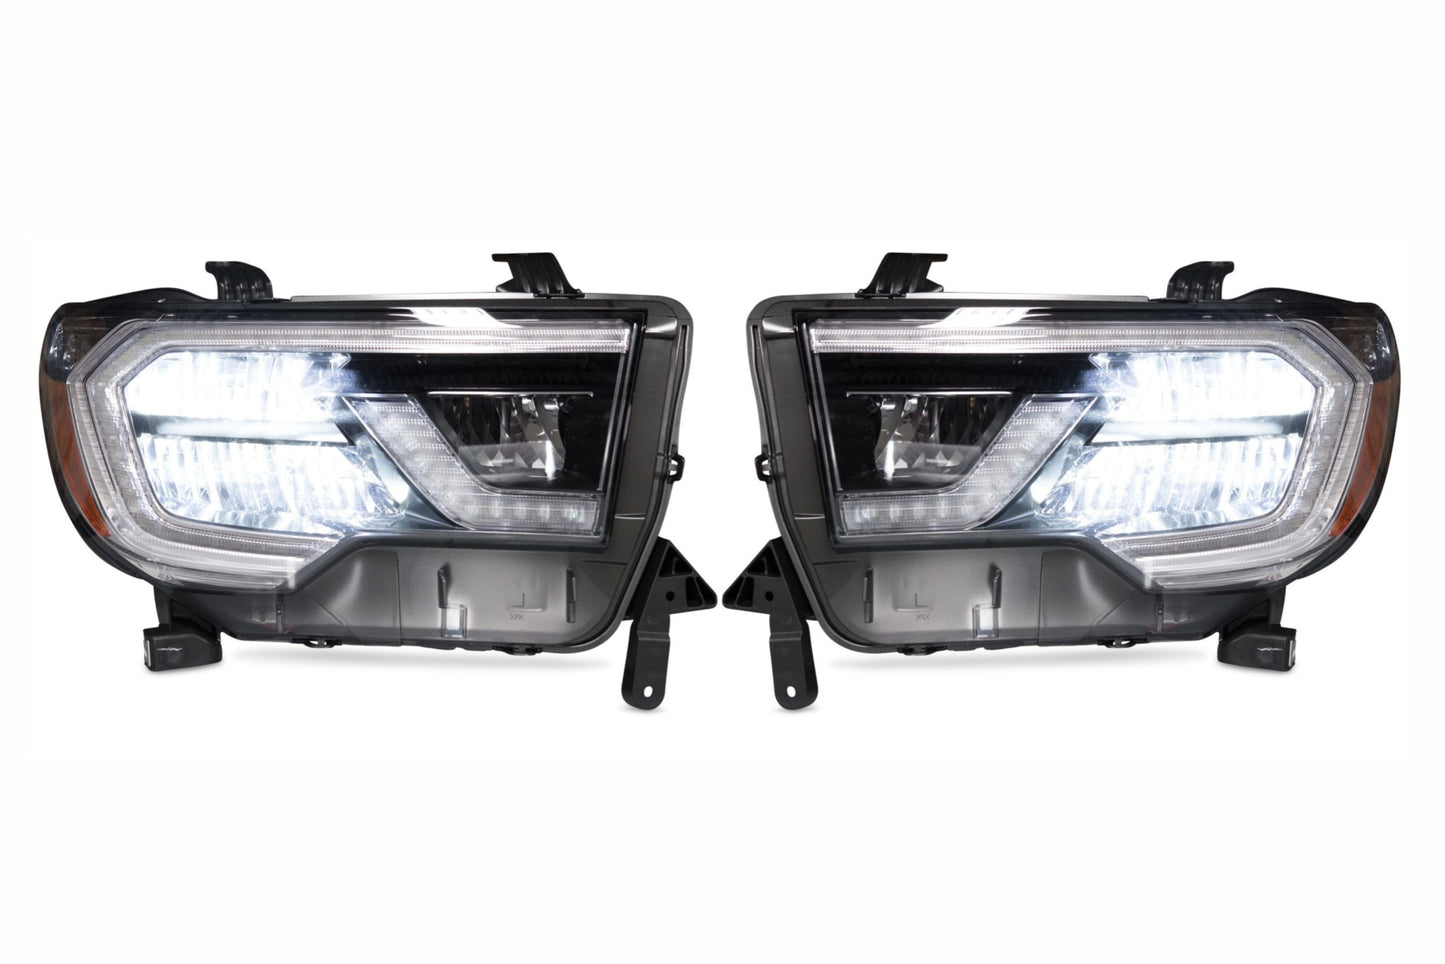 OEM LED Headlights: Toyota Sequoia (18+) (Black / Left)